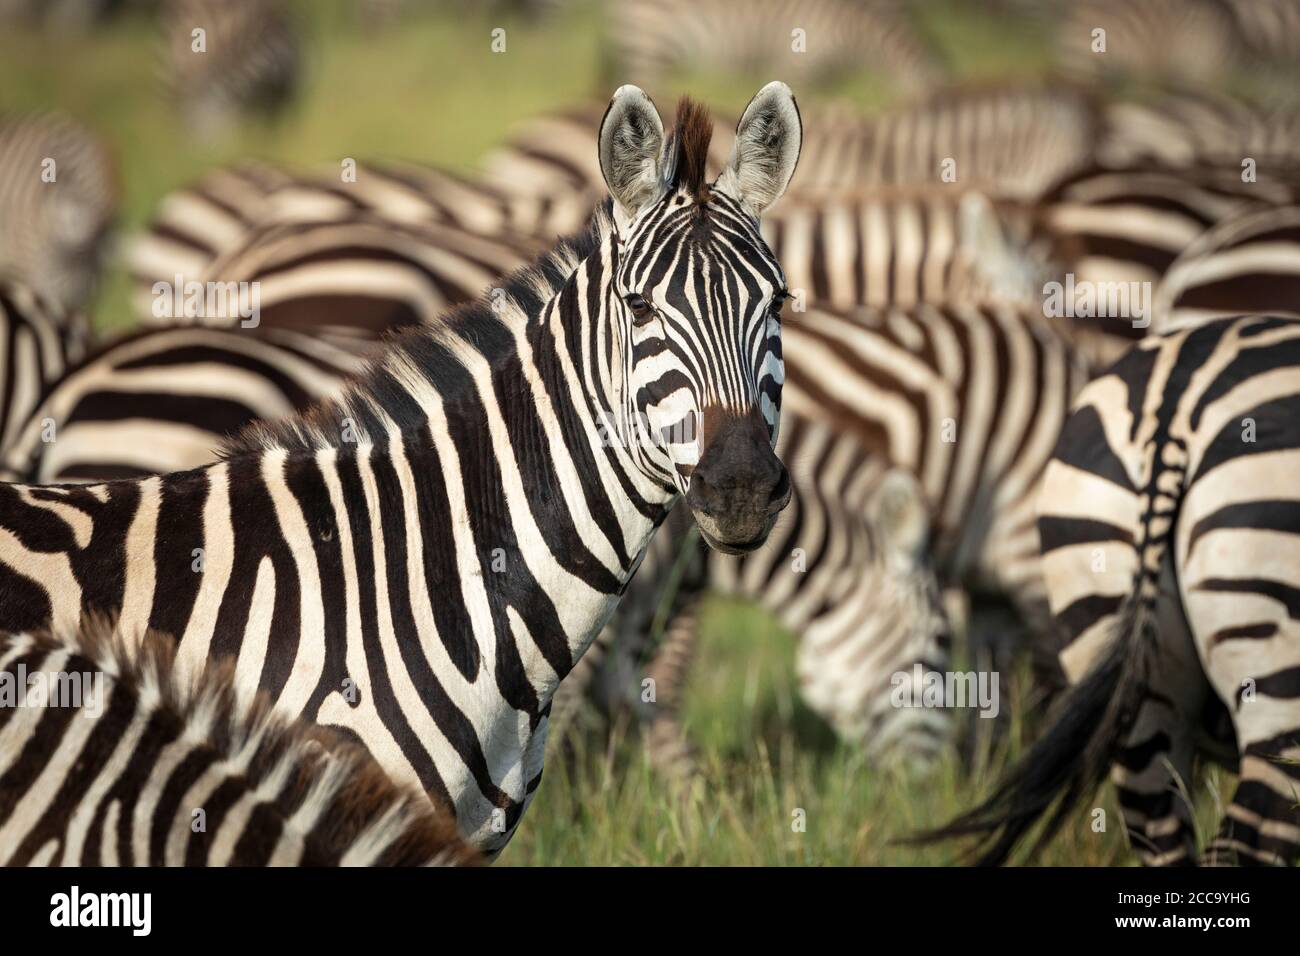 Tête sur le paysage de la moitié du corps zébré regardant la tête sur à la caméra se tenant au milieu d'un troupeau de zébrures dans Serengeti Tanzanie Banque D'Images